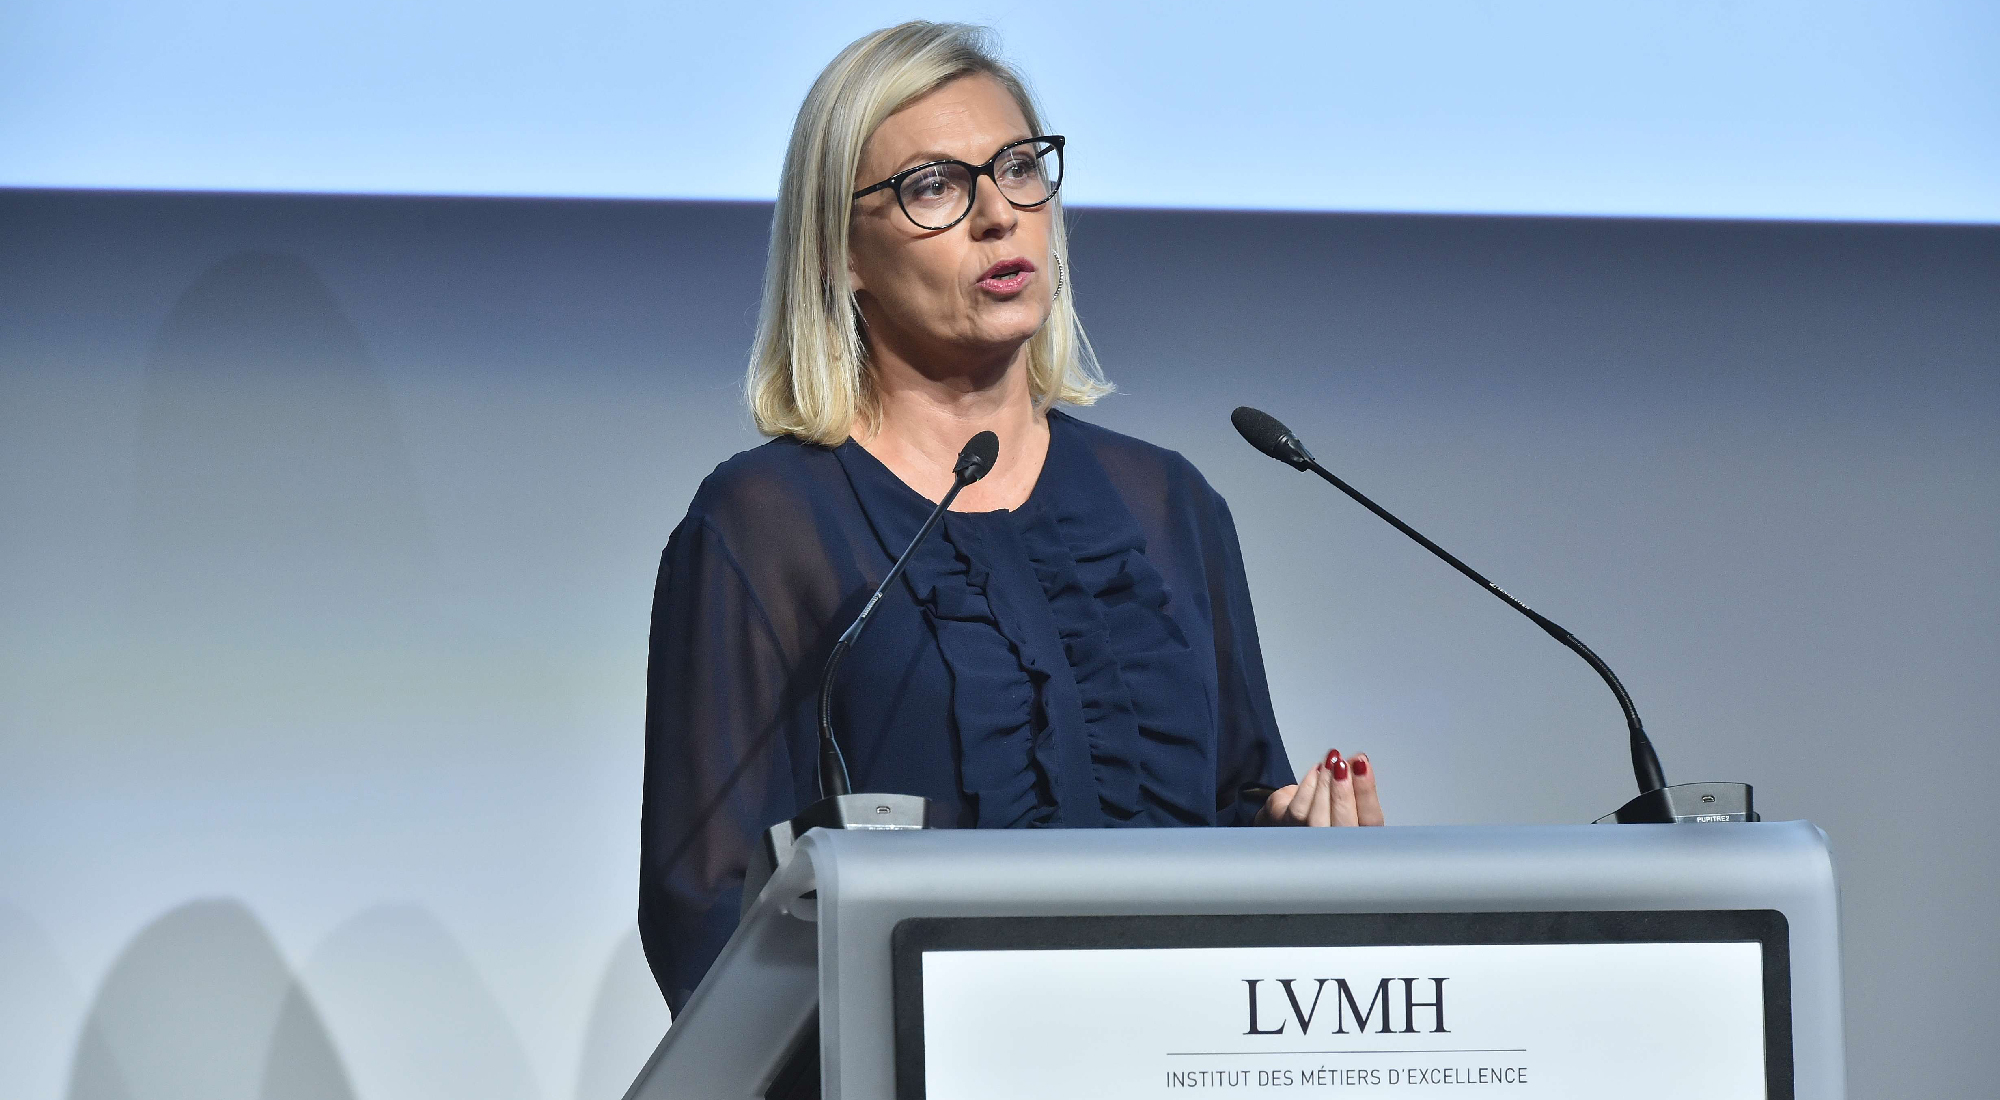 LVMH Institut des Métiers d'Excellence starts 2017/2018 school